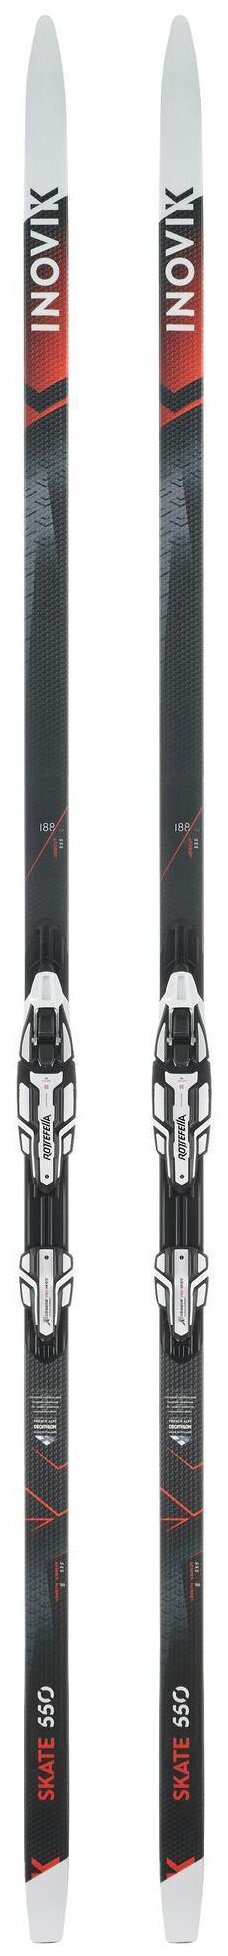 Взрослые лыжи для конькового хода 550 medium+Rottefella Xcelerator Модель XC S 550 - лыжи для конькового хода продвинутого уровня. Минимальное трение, а значит отличное скольжение благодаря использованию спеченного полиэтилена 188 см для мужчин/для женщин